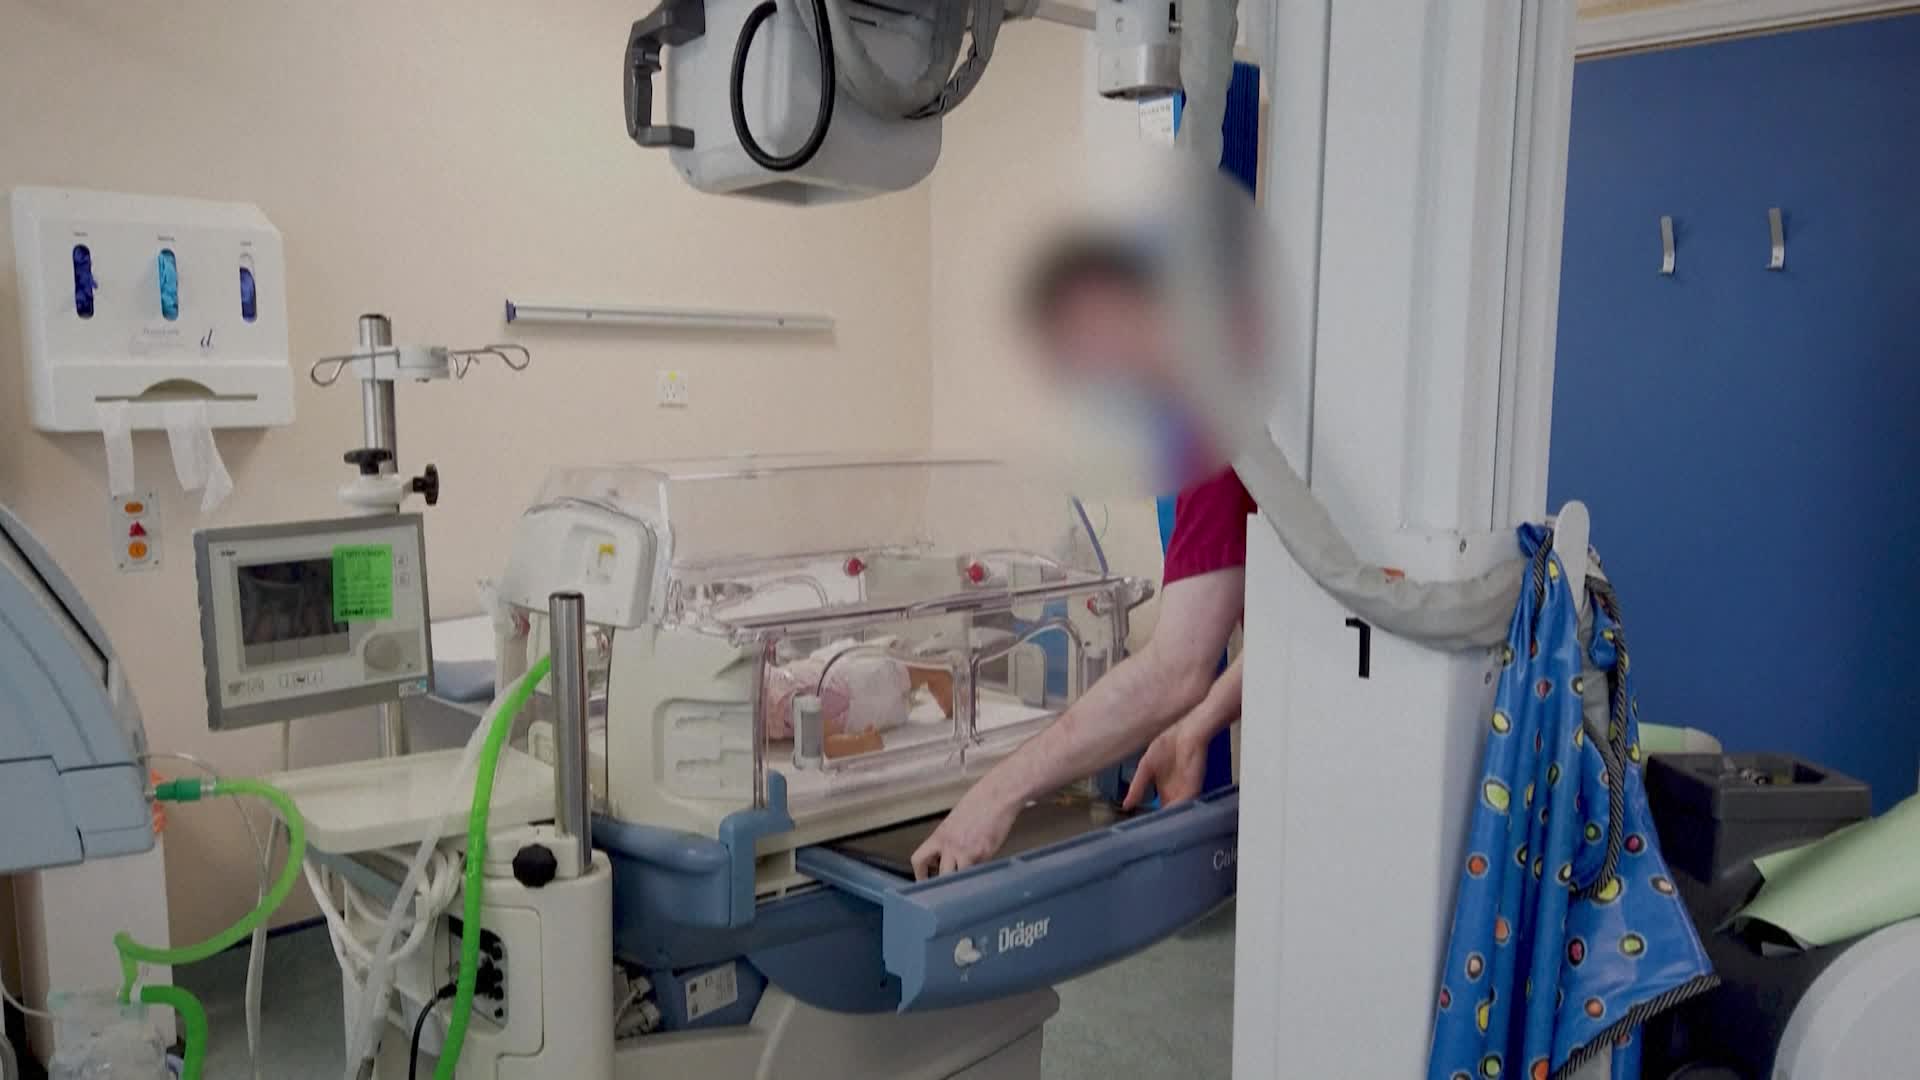 بريطانيا إدانة ممرضة بقتل 7 أطفال حديثي الولادة ومحاولة قتل 10 آخرين - snapshot 194.93